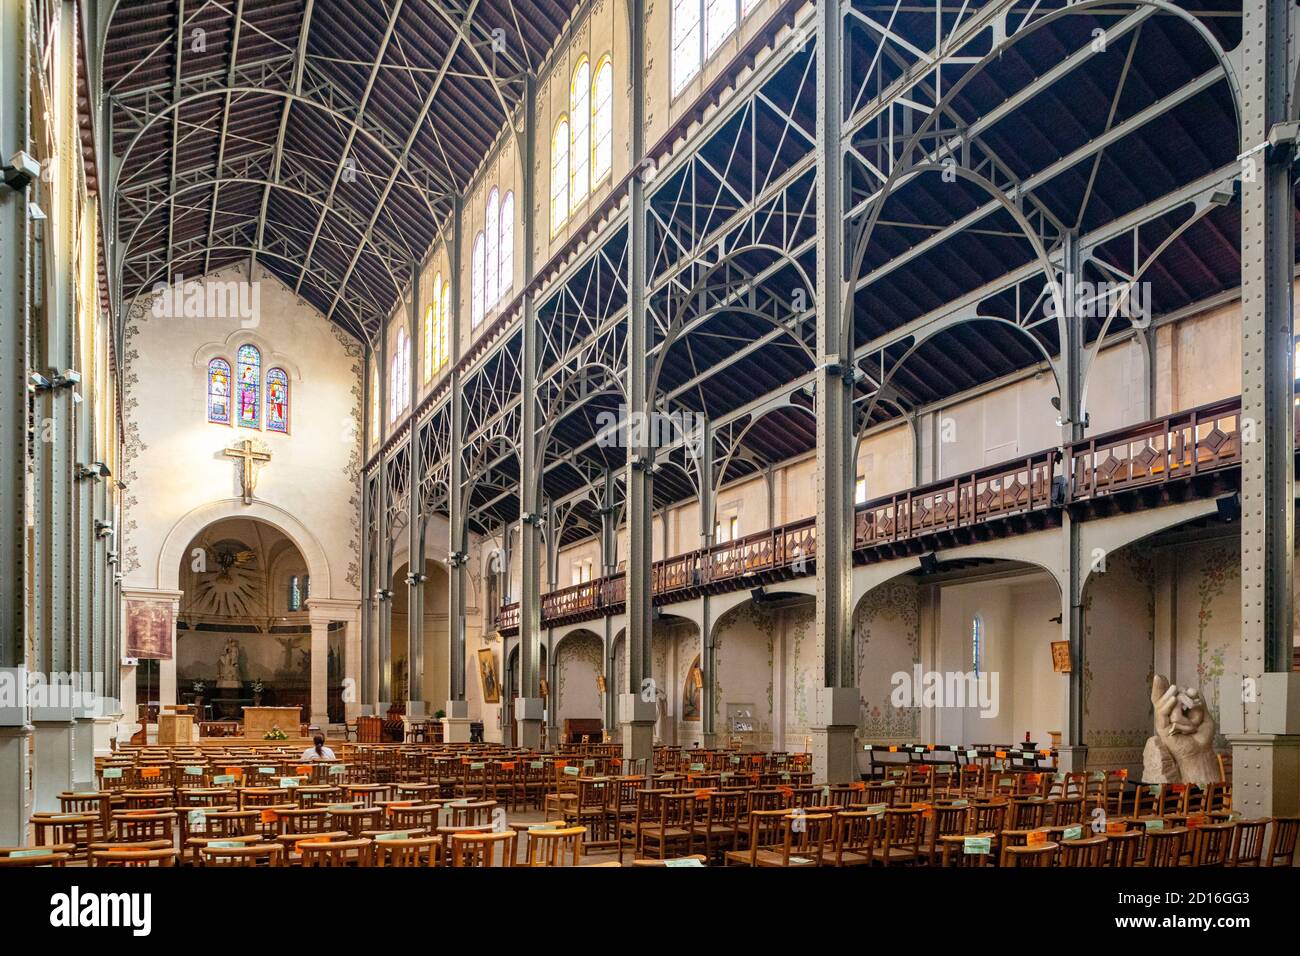 France, Paris, Notre Dame du Travail church in Paris Stock Photo